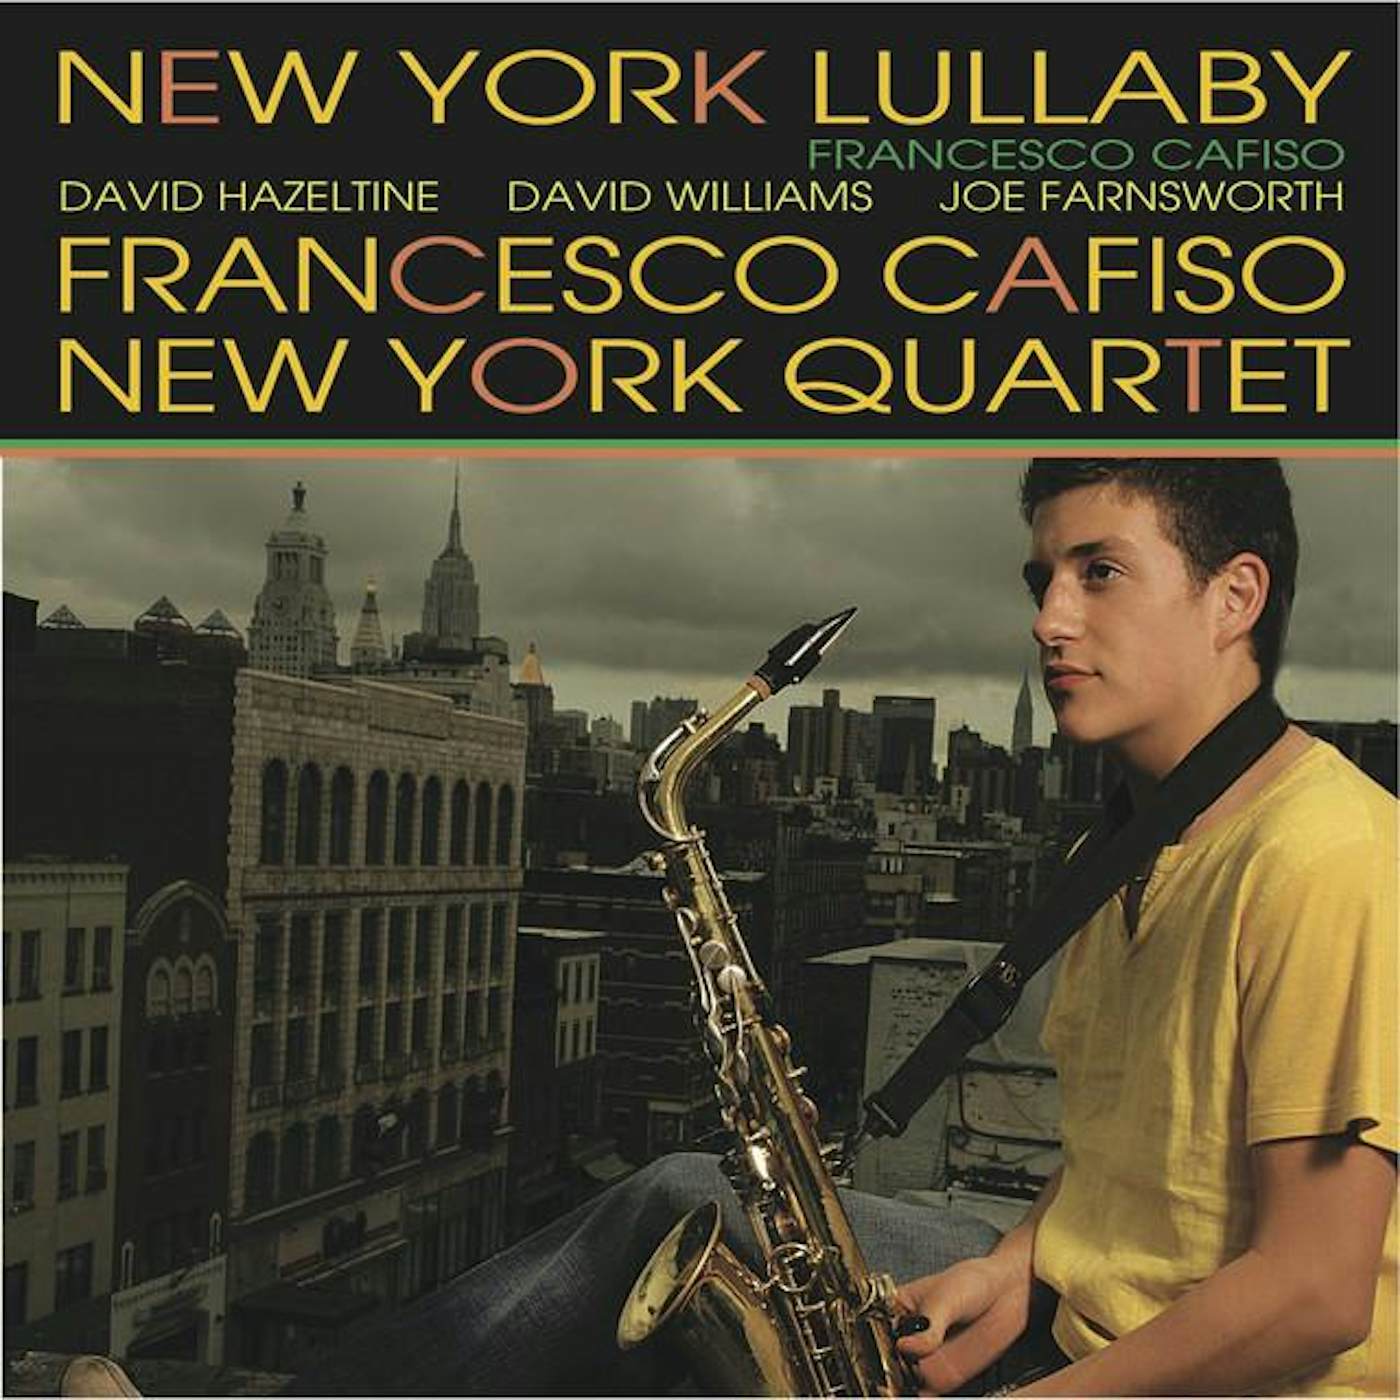 Francesco Cafiso New York Quartet